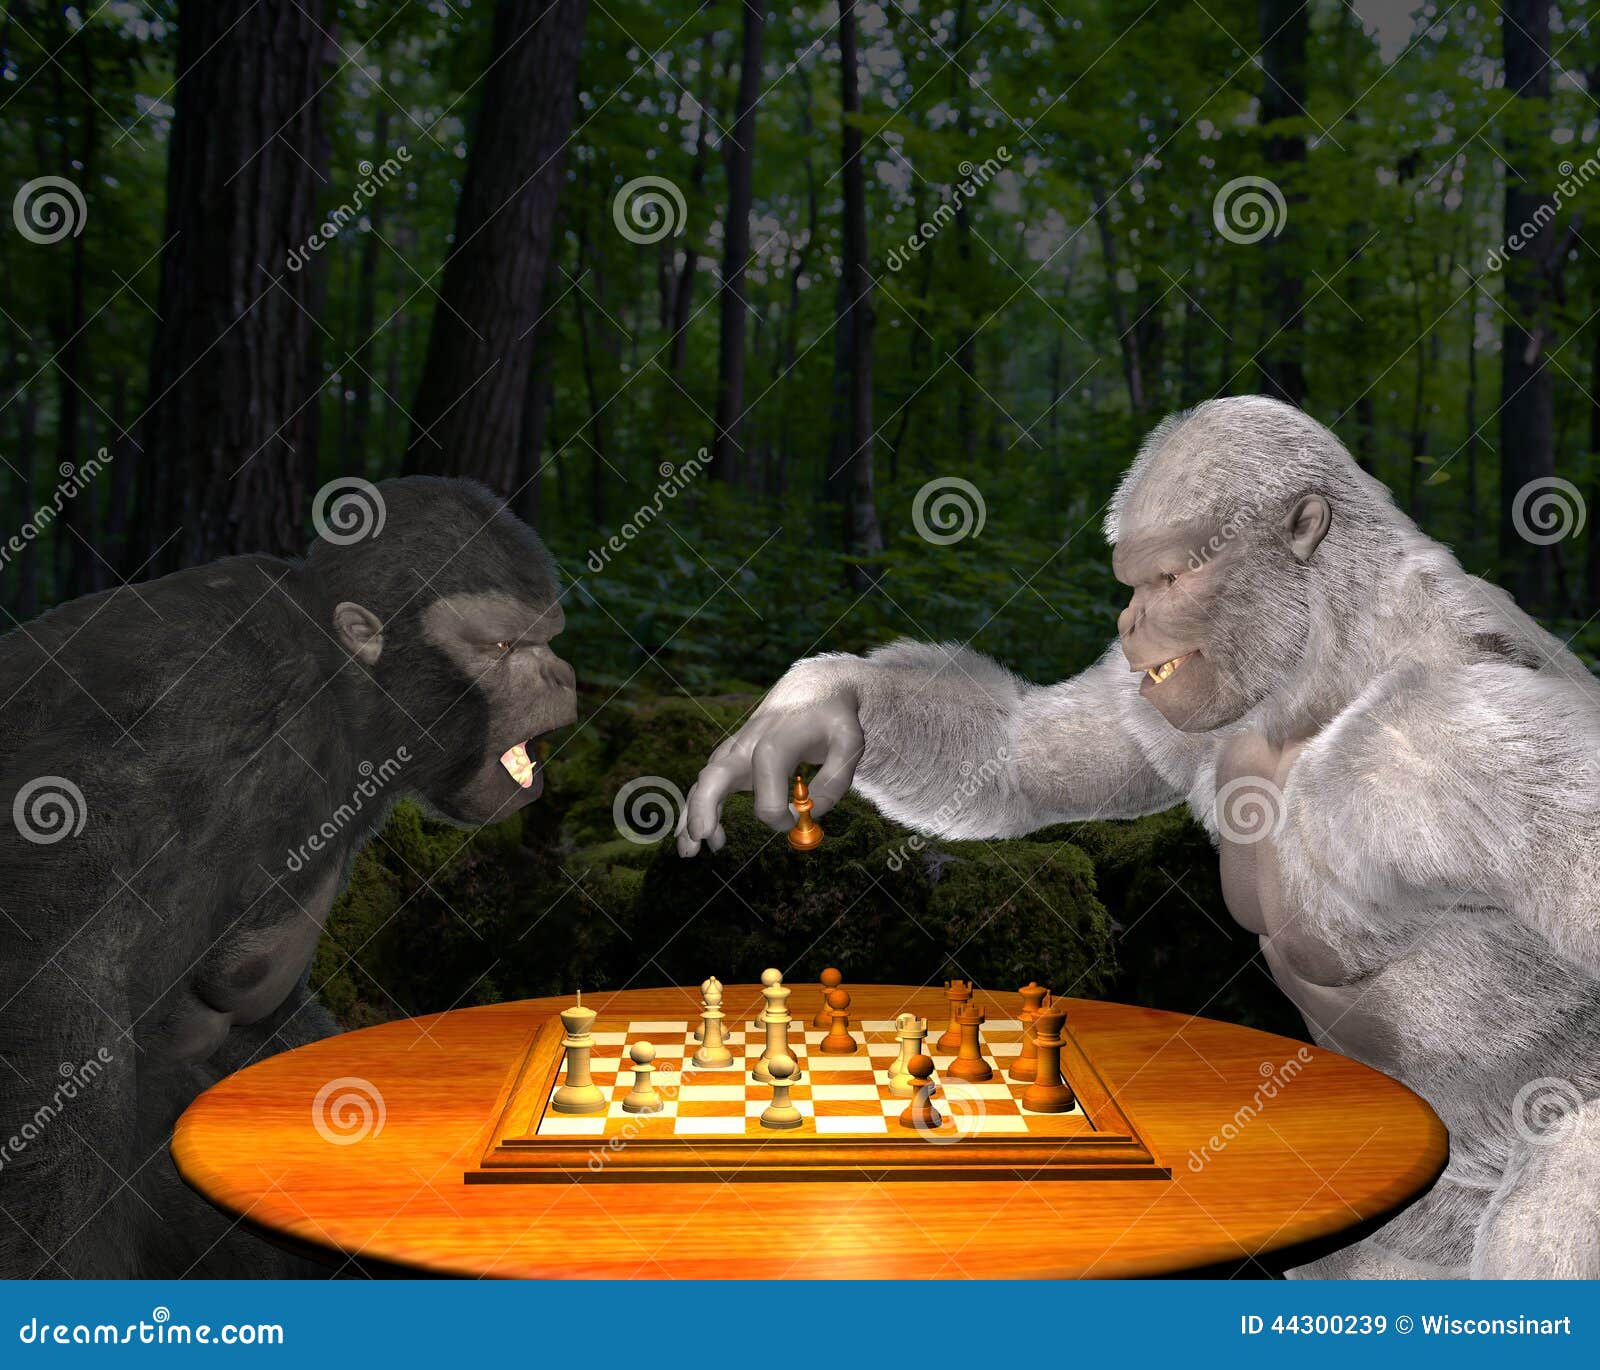 Πίθηκος, σκάκι παιχνιδιού γορίλλων, απεικόνιση ανταγωνισμού. Μια διασκέδαση και μια αστεία εικόνα δύο γορίλλων που παίζουν το σκάκι στη ζούγκλα Υπάρχει ένας γραπτός γορίλλας δεδομένου ότι παίζουν το παιχνίδι στρατηγικής τους Ποιος πίθηκος στην απεικόνιση πρόκειται να κερδίσει;